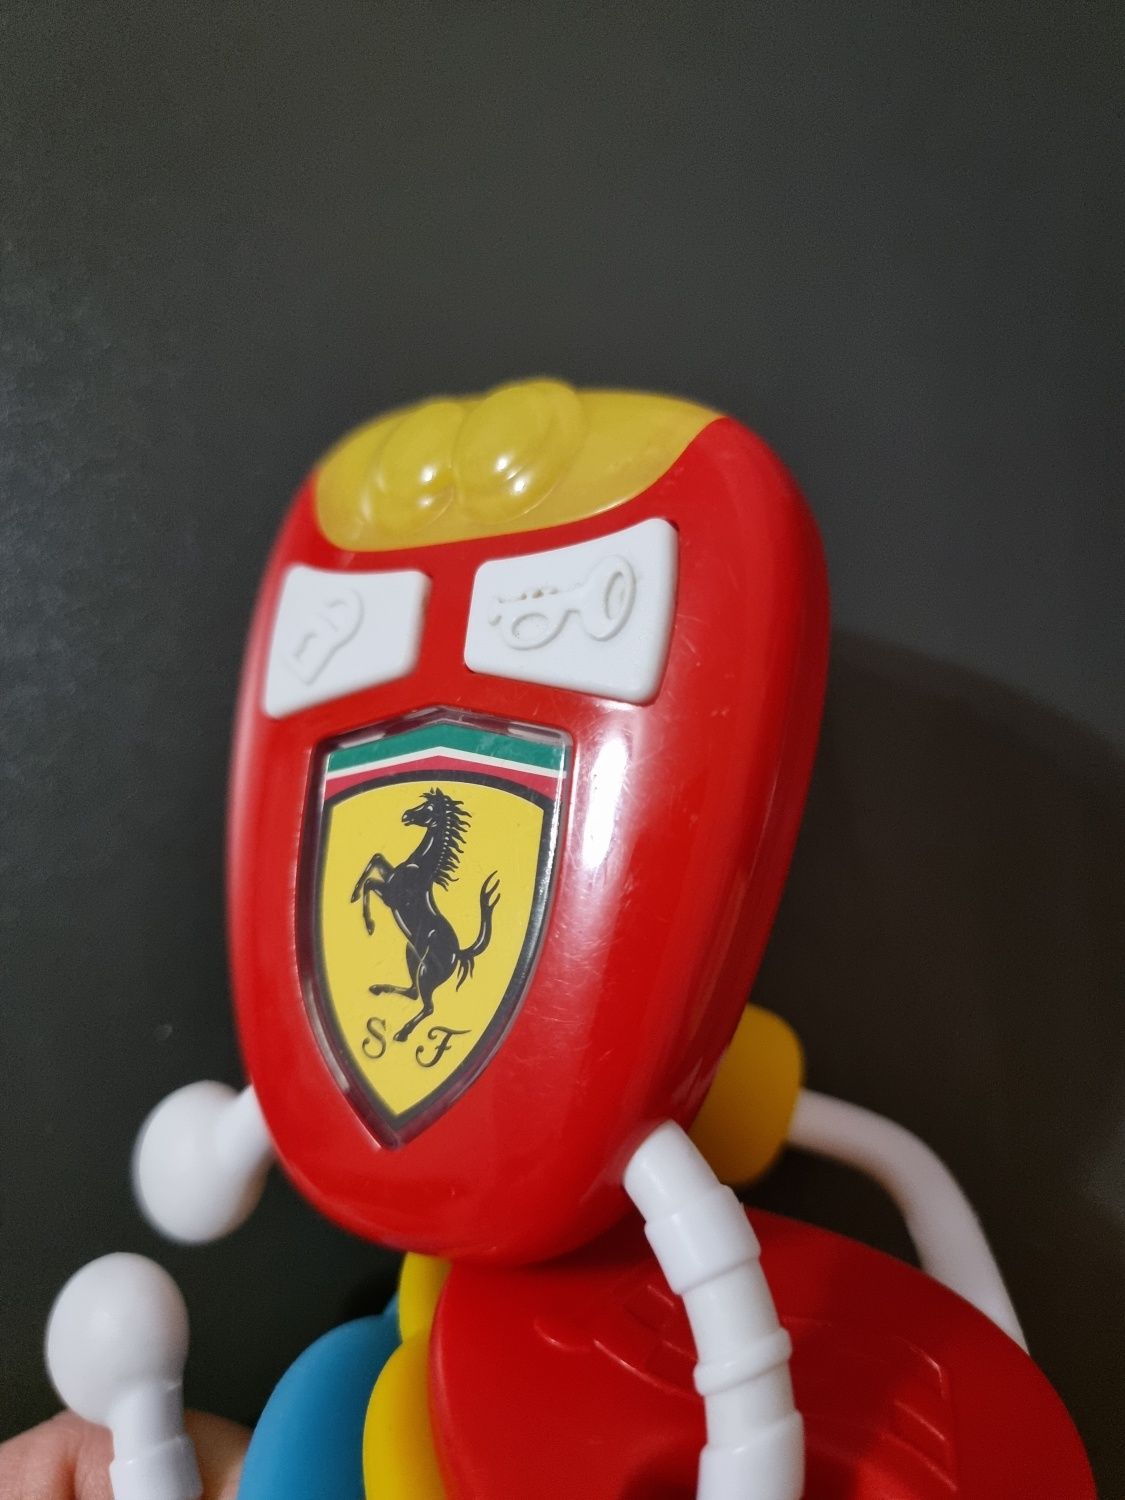 Музична іграшка Chicco Ключі Ferrari зі світловими ефектами

Особливо